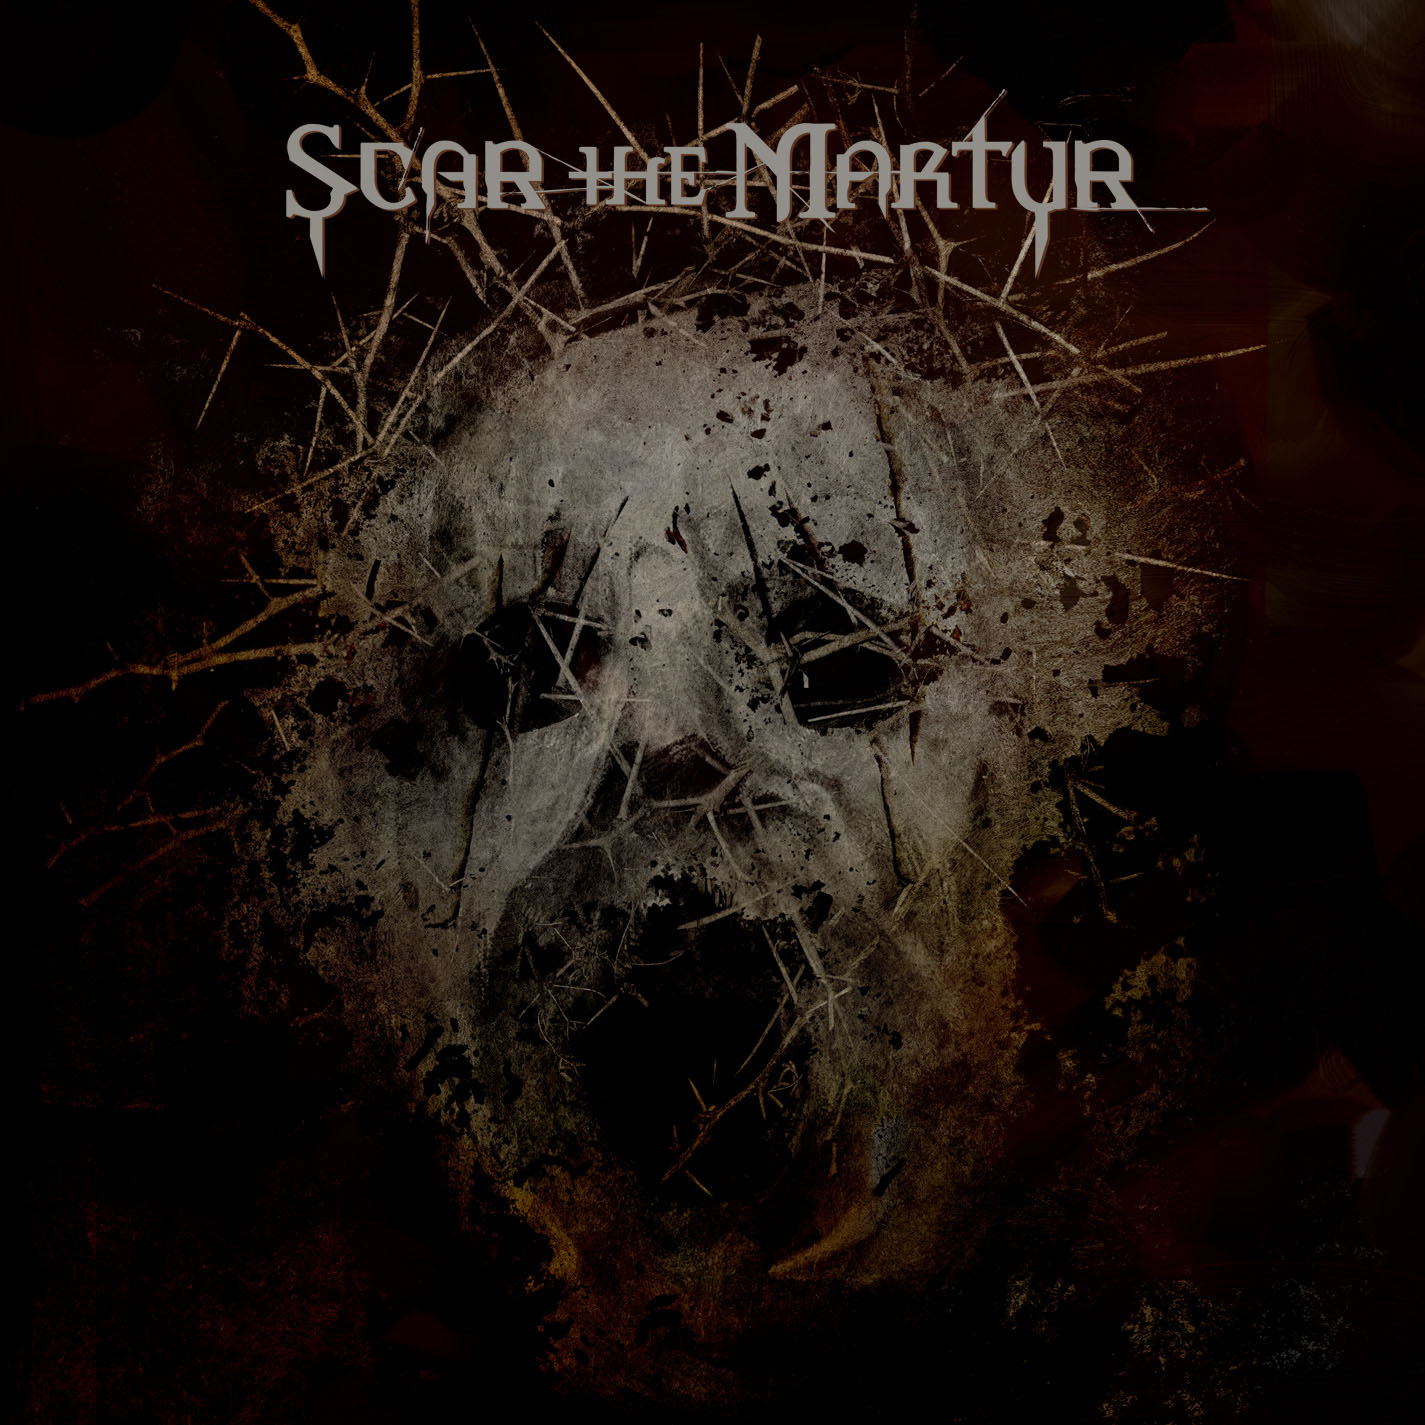 Scar The Martyr CD borító / cover.